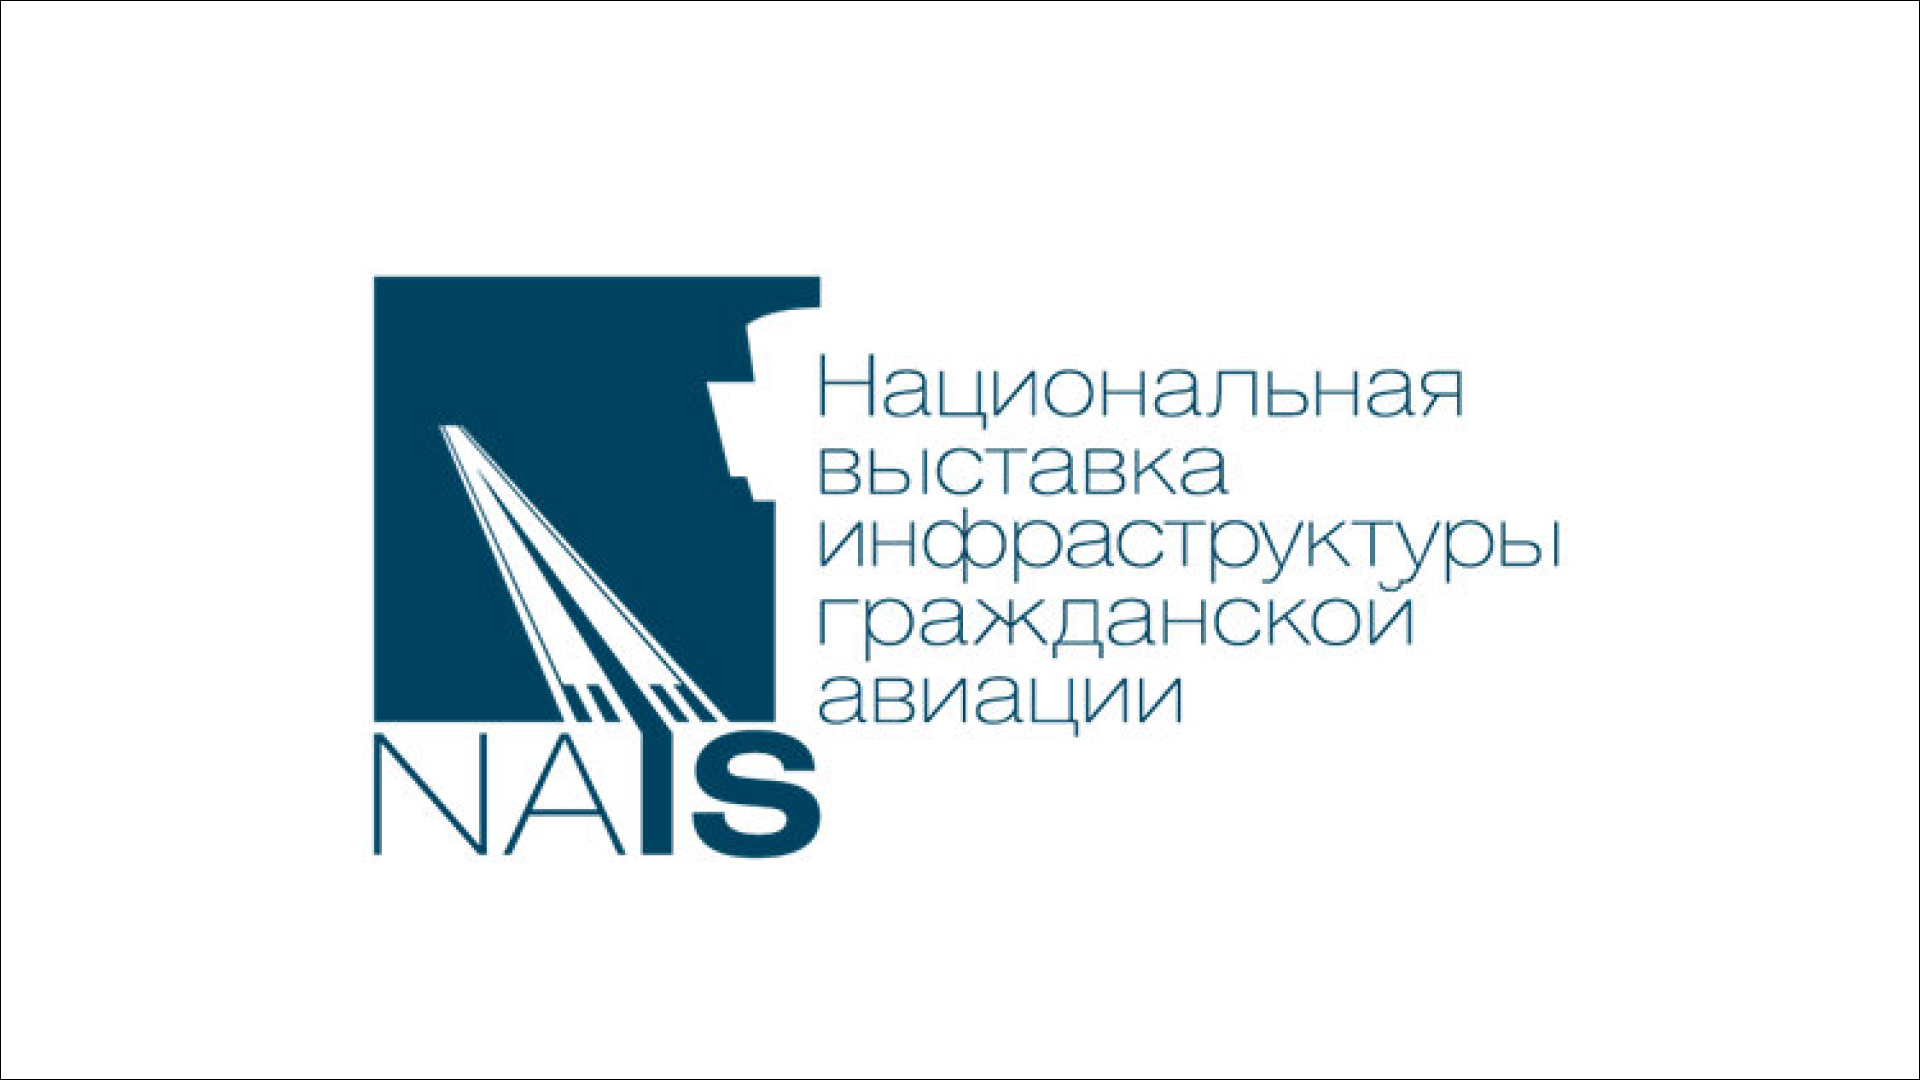 ФКУ «Ространсмодернизация» примет участие в Национальной выставке и форуме инфраструктуры гражданской авиации NAIS - 2023